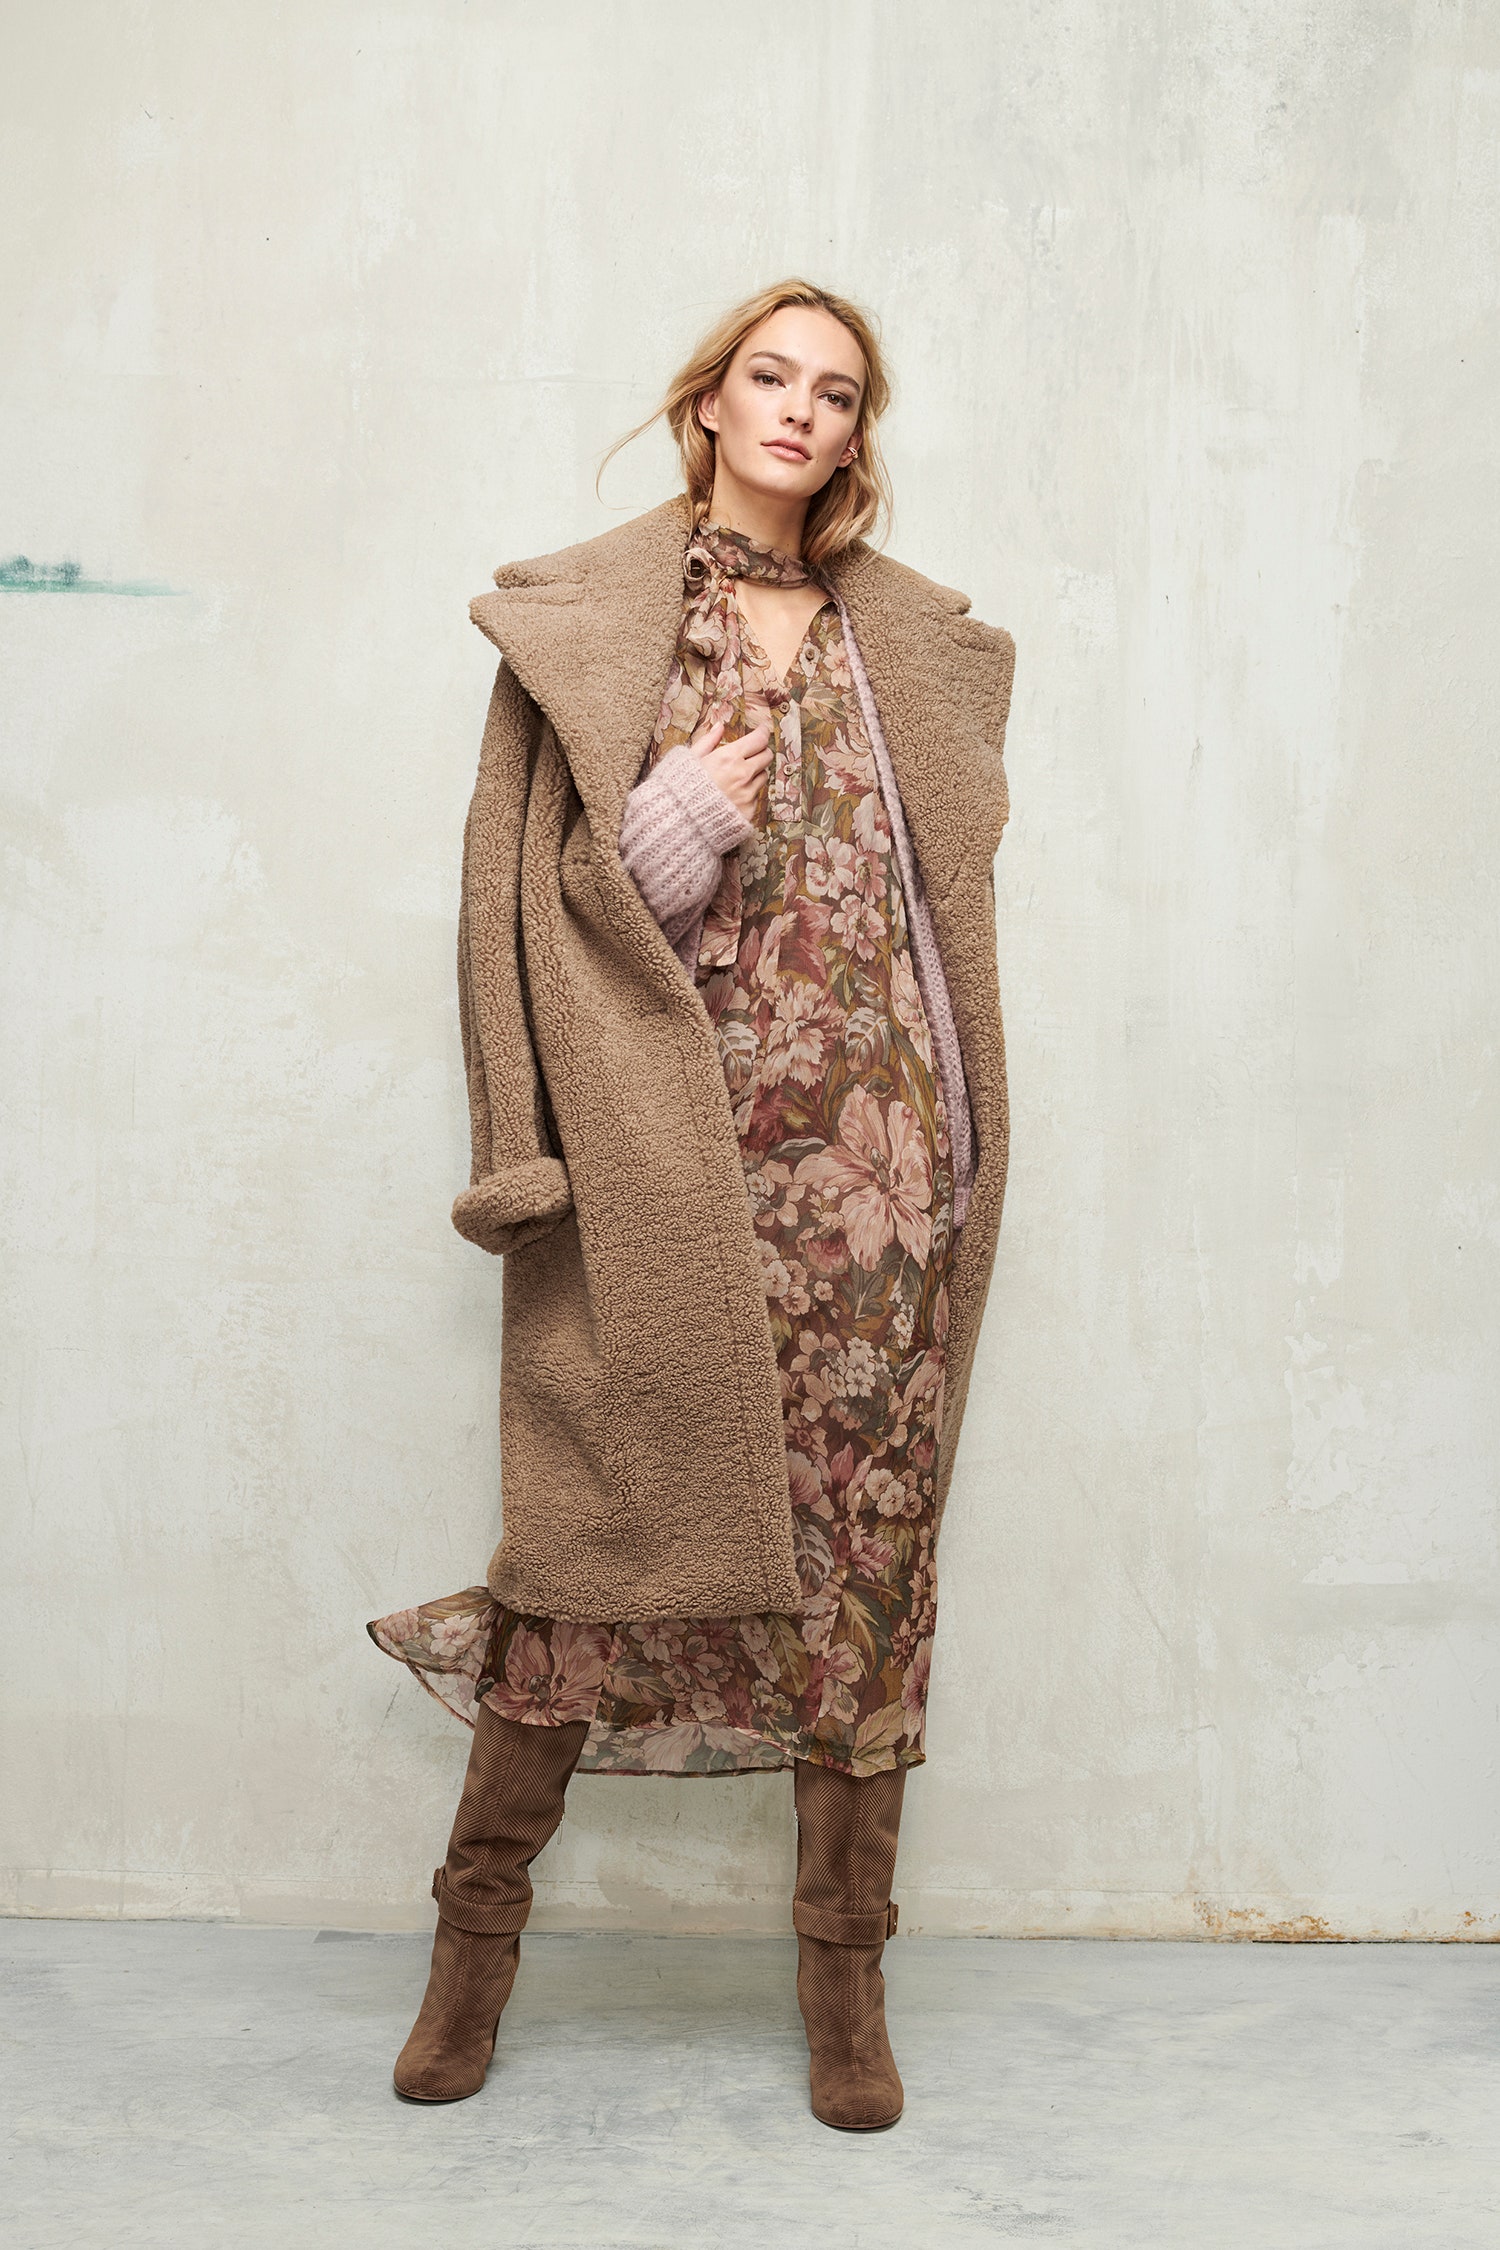 Базовый гардероб в женственной коллекции Luisa Cerano свитеры платья миди костюмы шубы из искусственного меха вещи из кожи